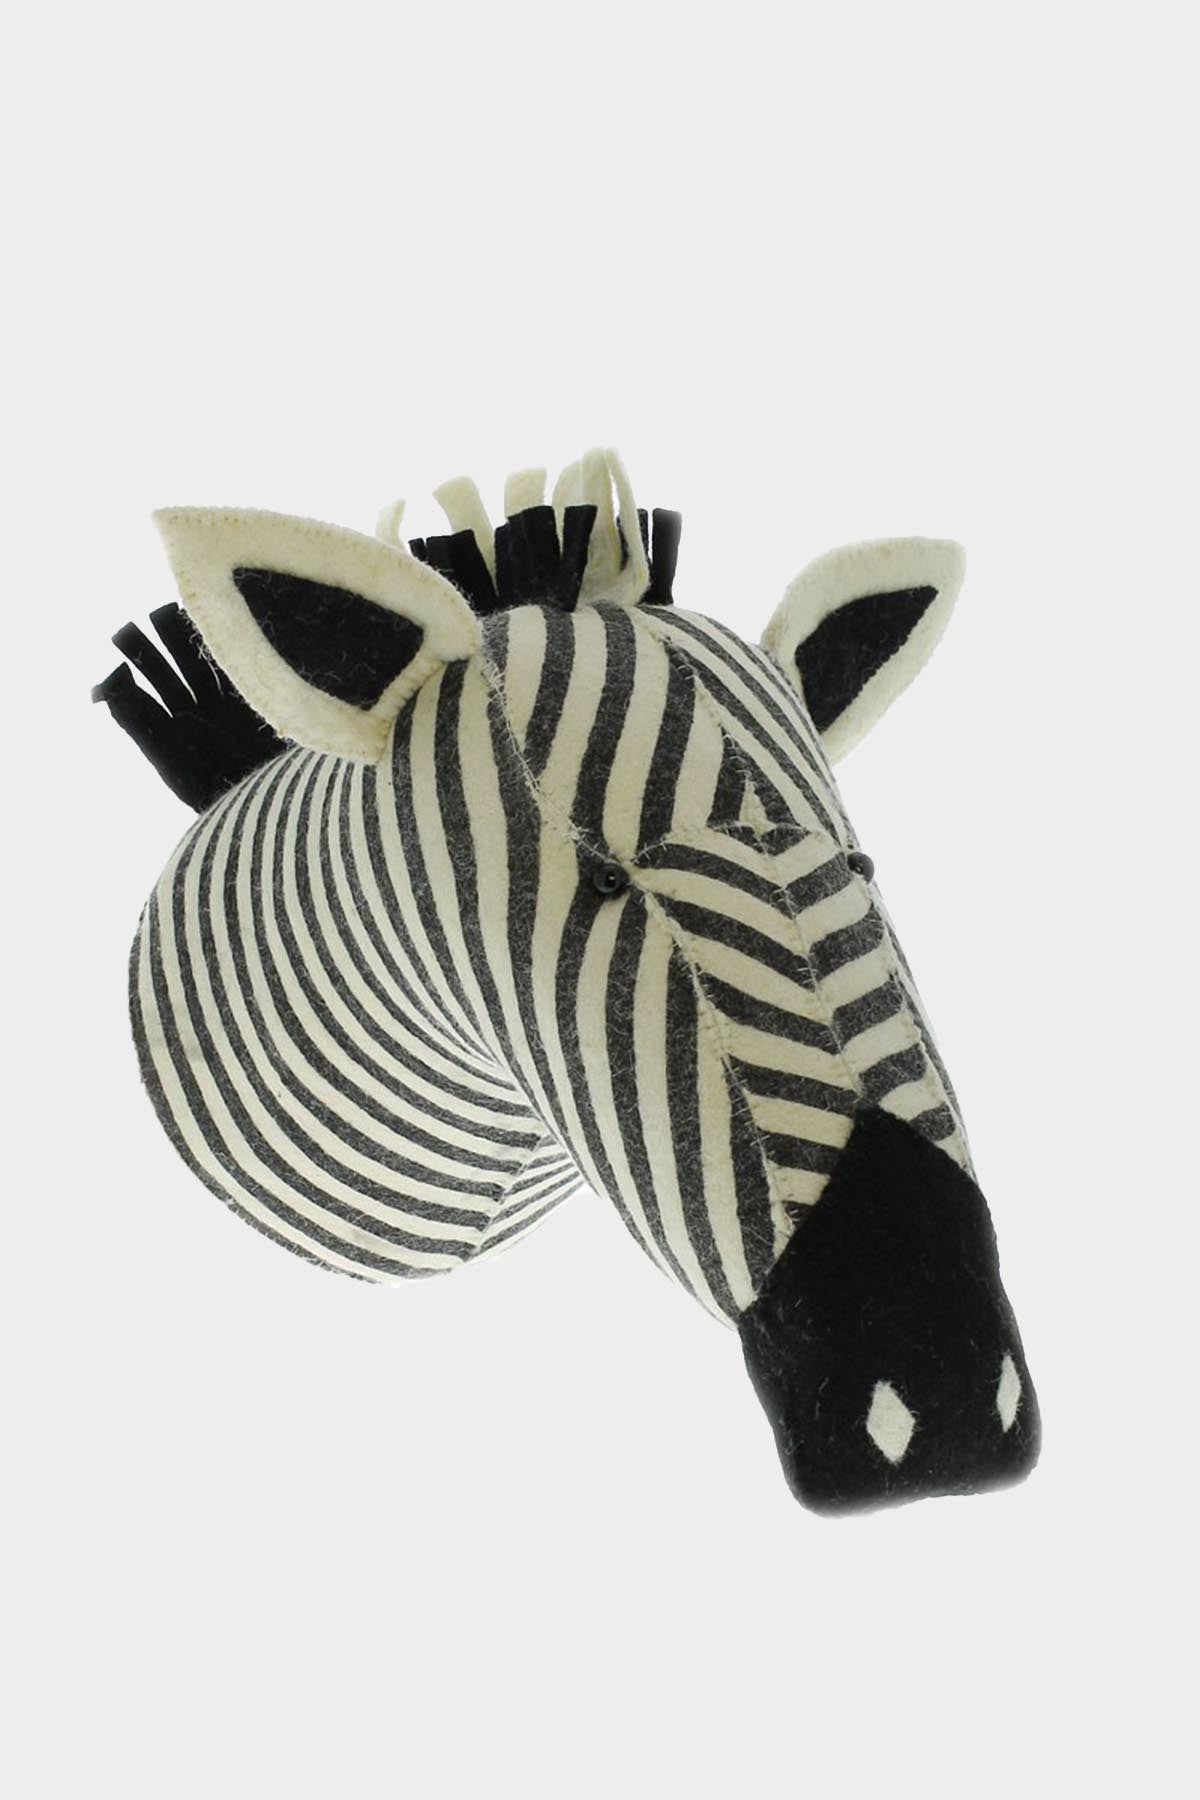 Stripe Zebra Head Wool Mount